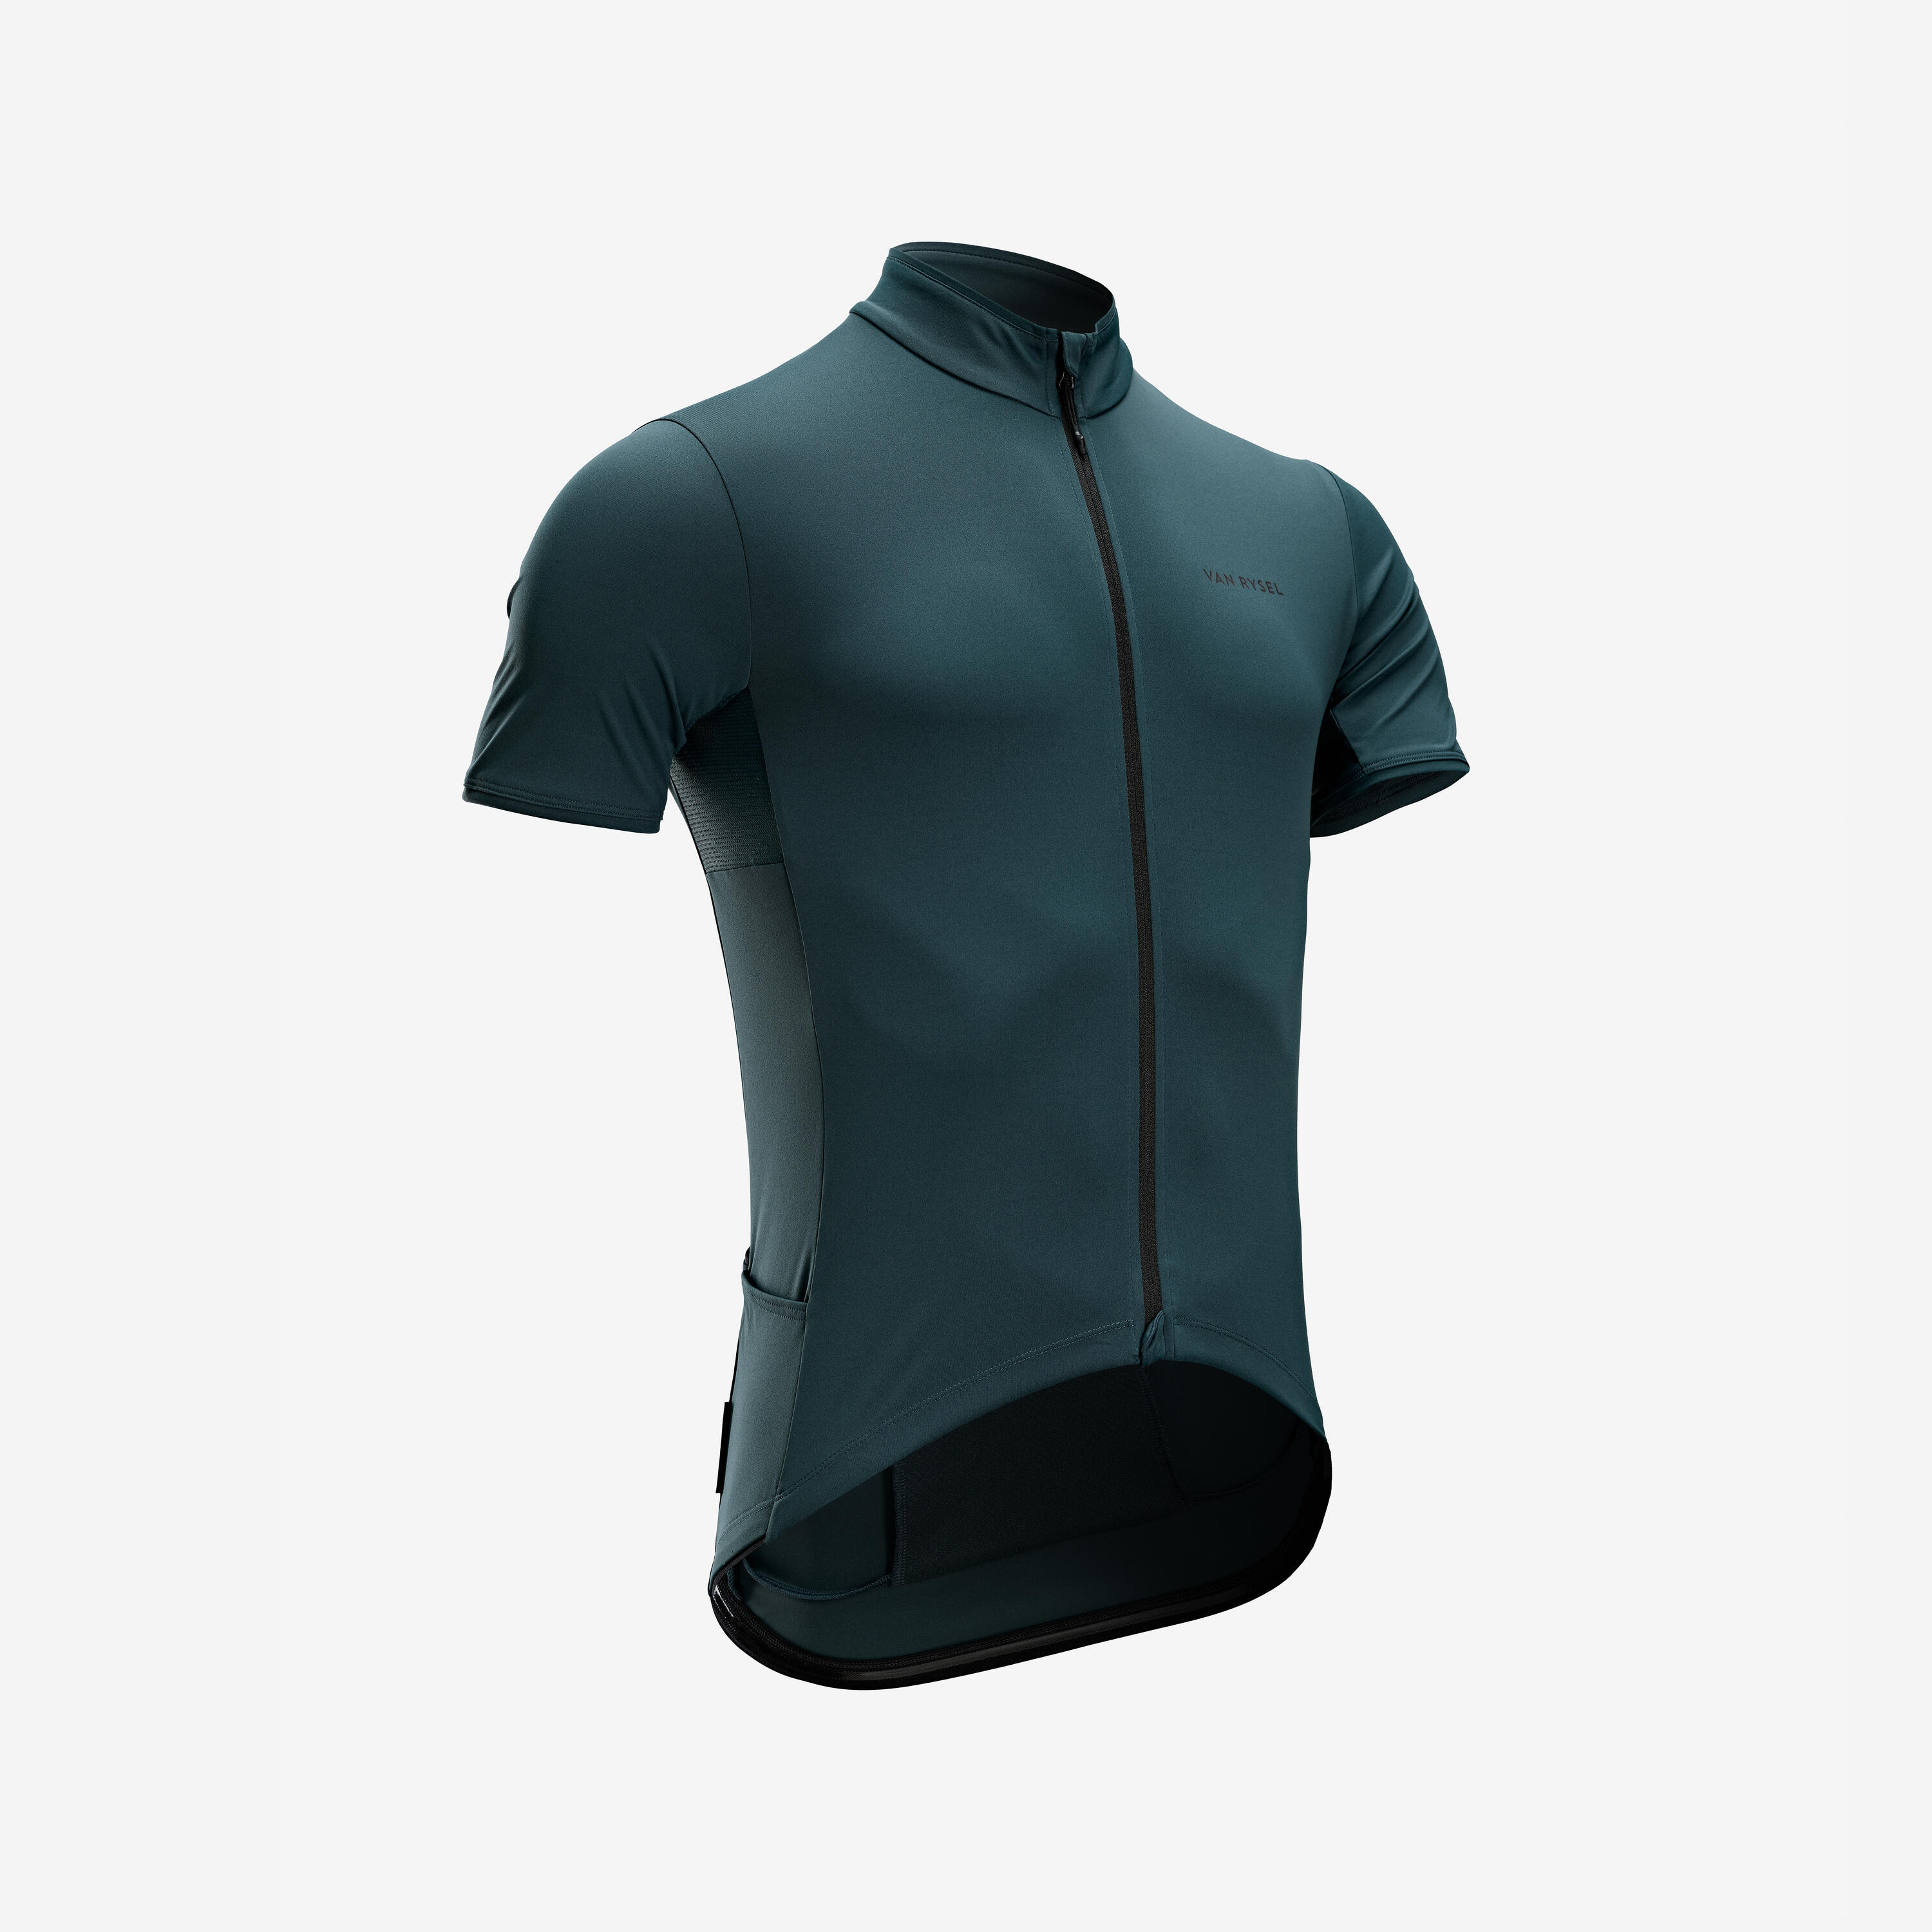 Men's Road Cycling Short-Sleeved Summer Jersey Endurance - Emerald Green 2/6